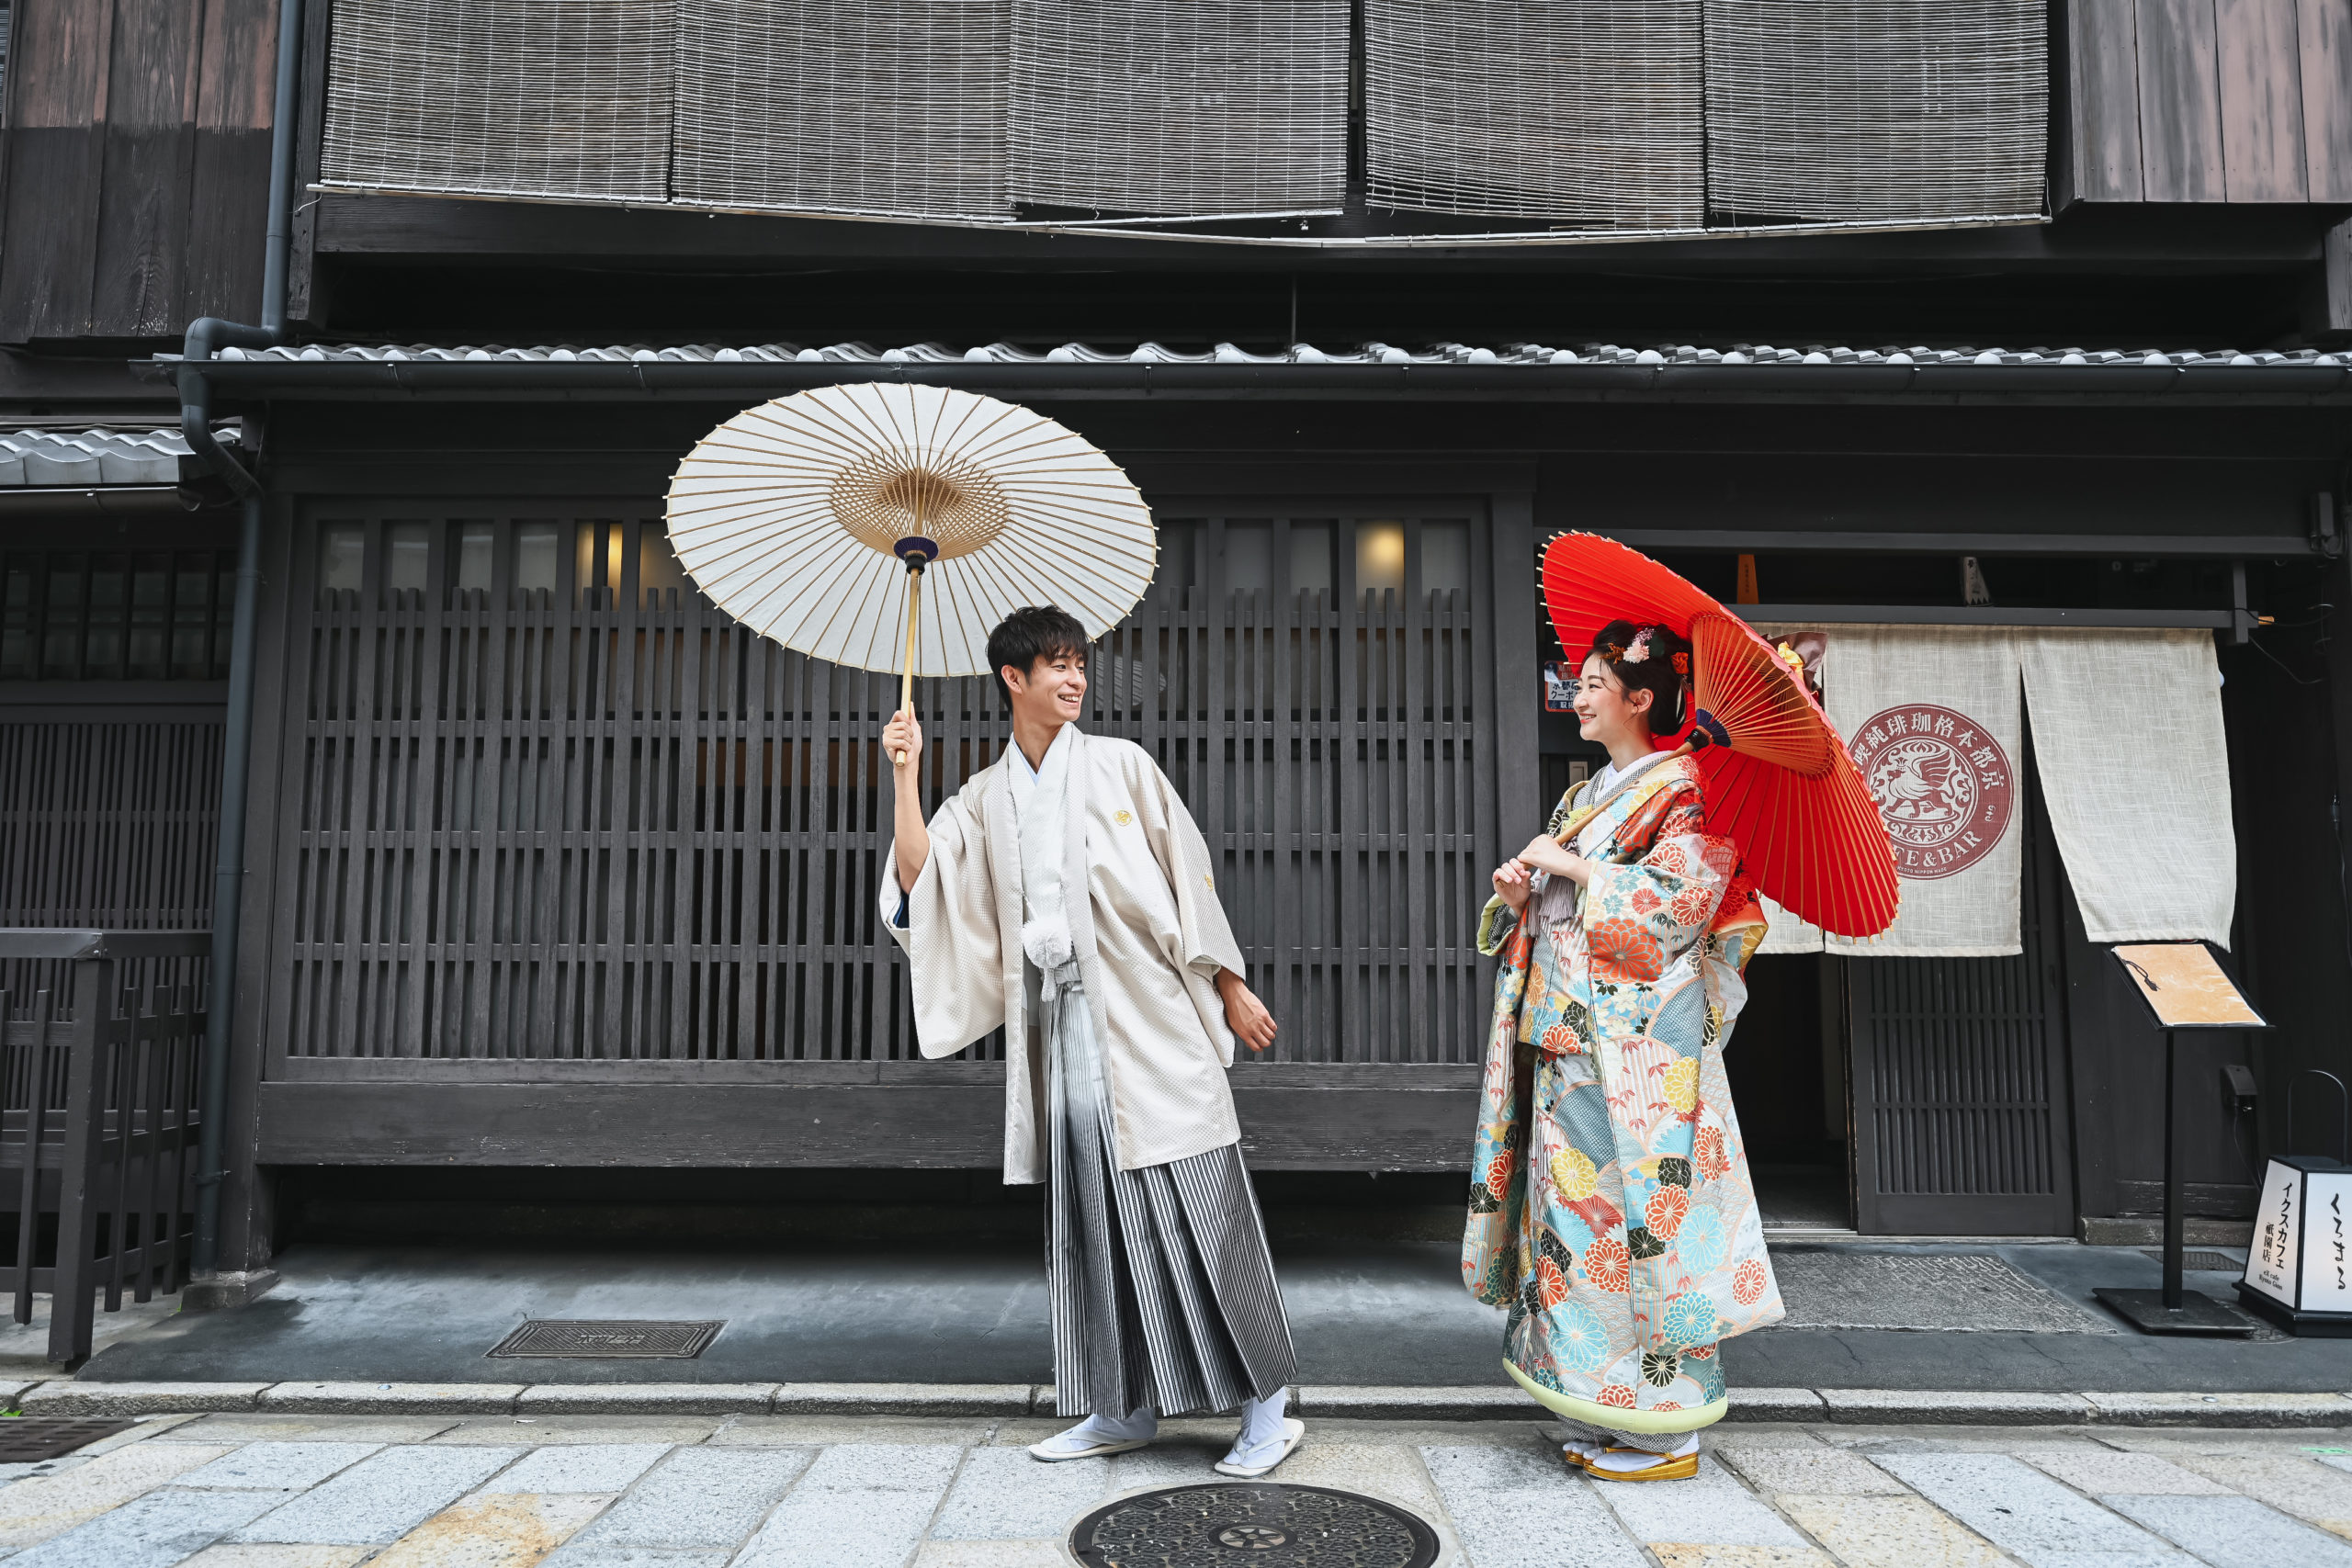 祇園の町を和傘を差して歩く夫婦